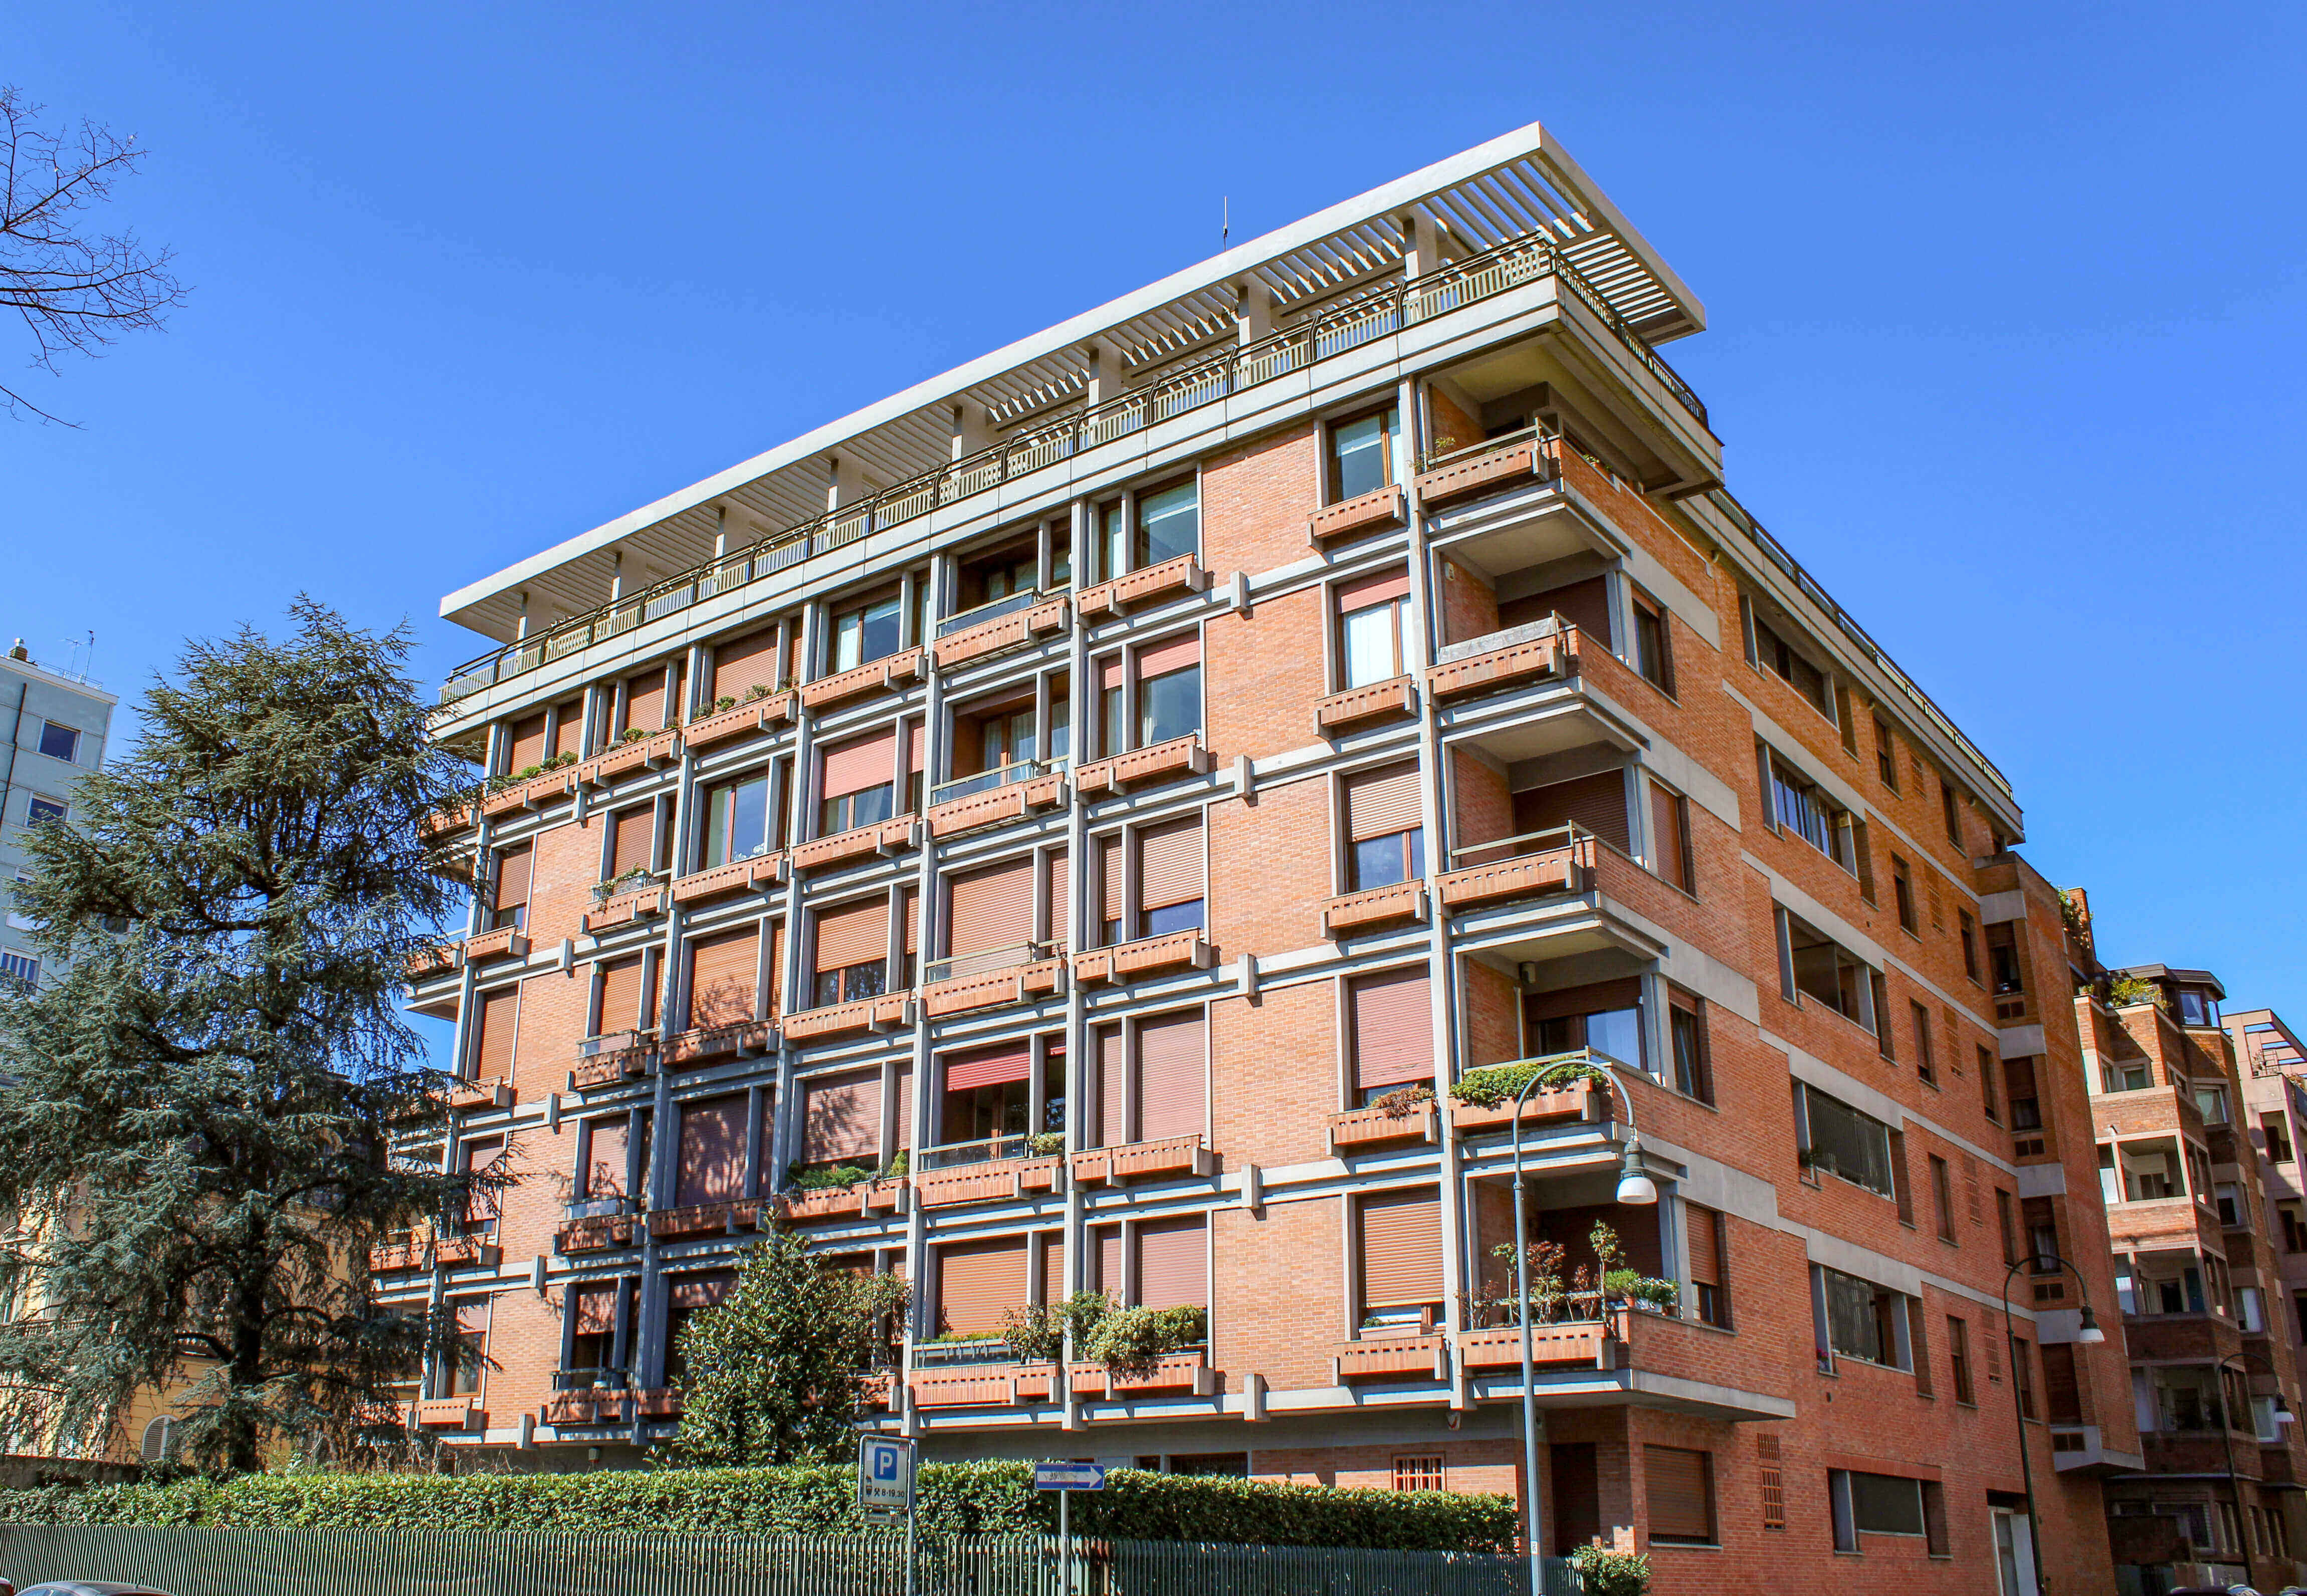 Stupendo appartamento di rappresentanza con vista magnifica - Corso Massimo D'Azeglio, Torino